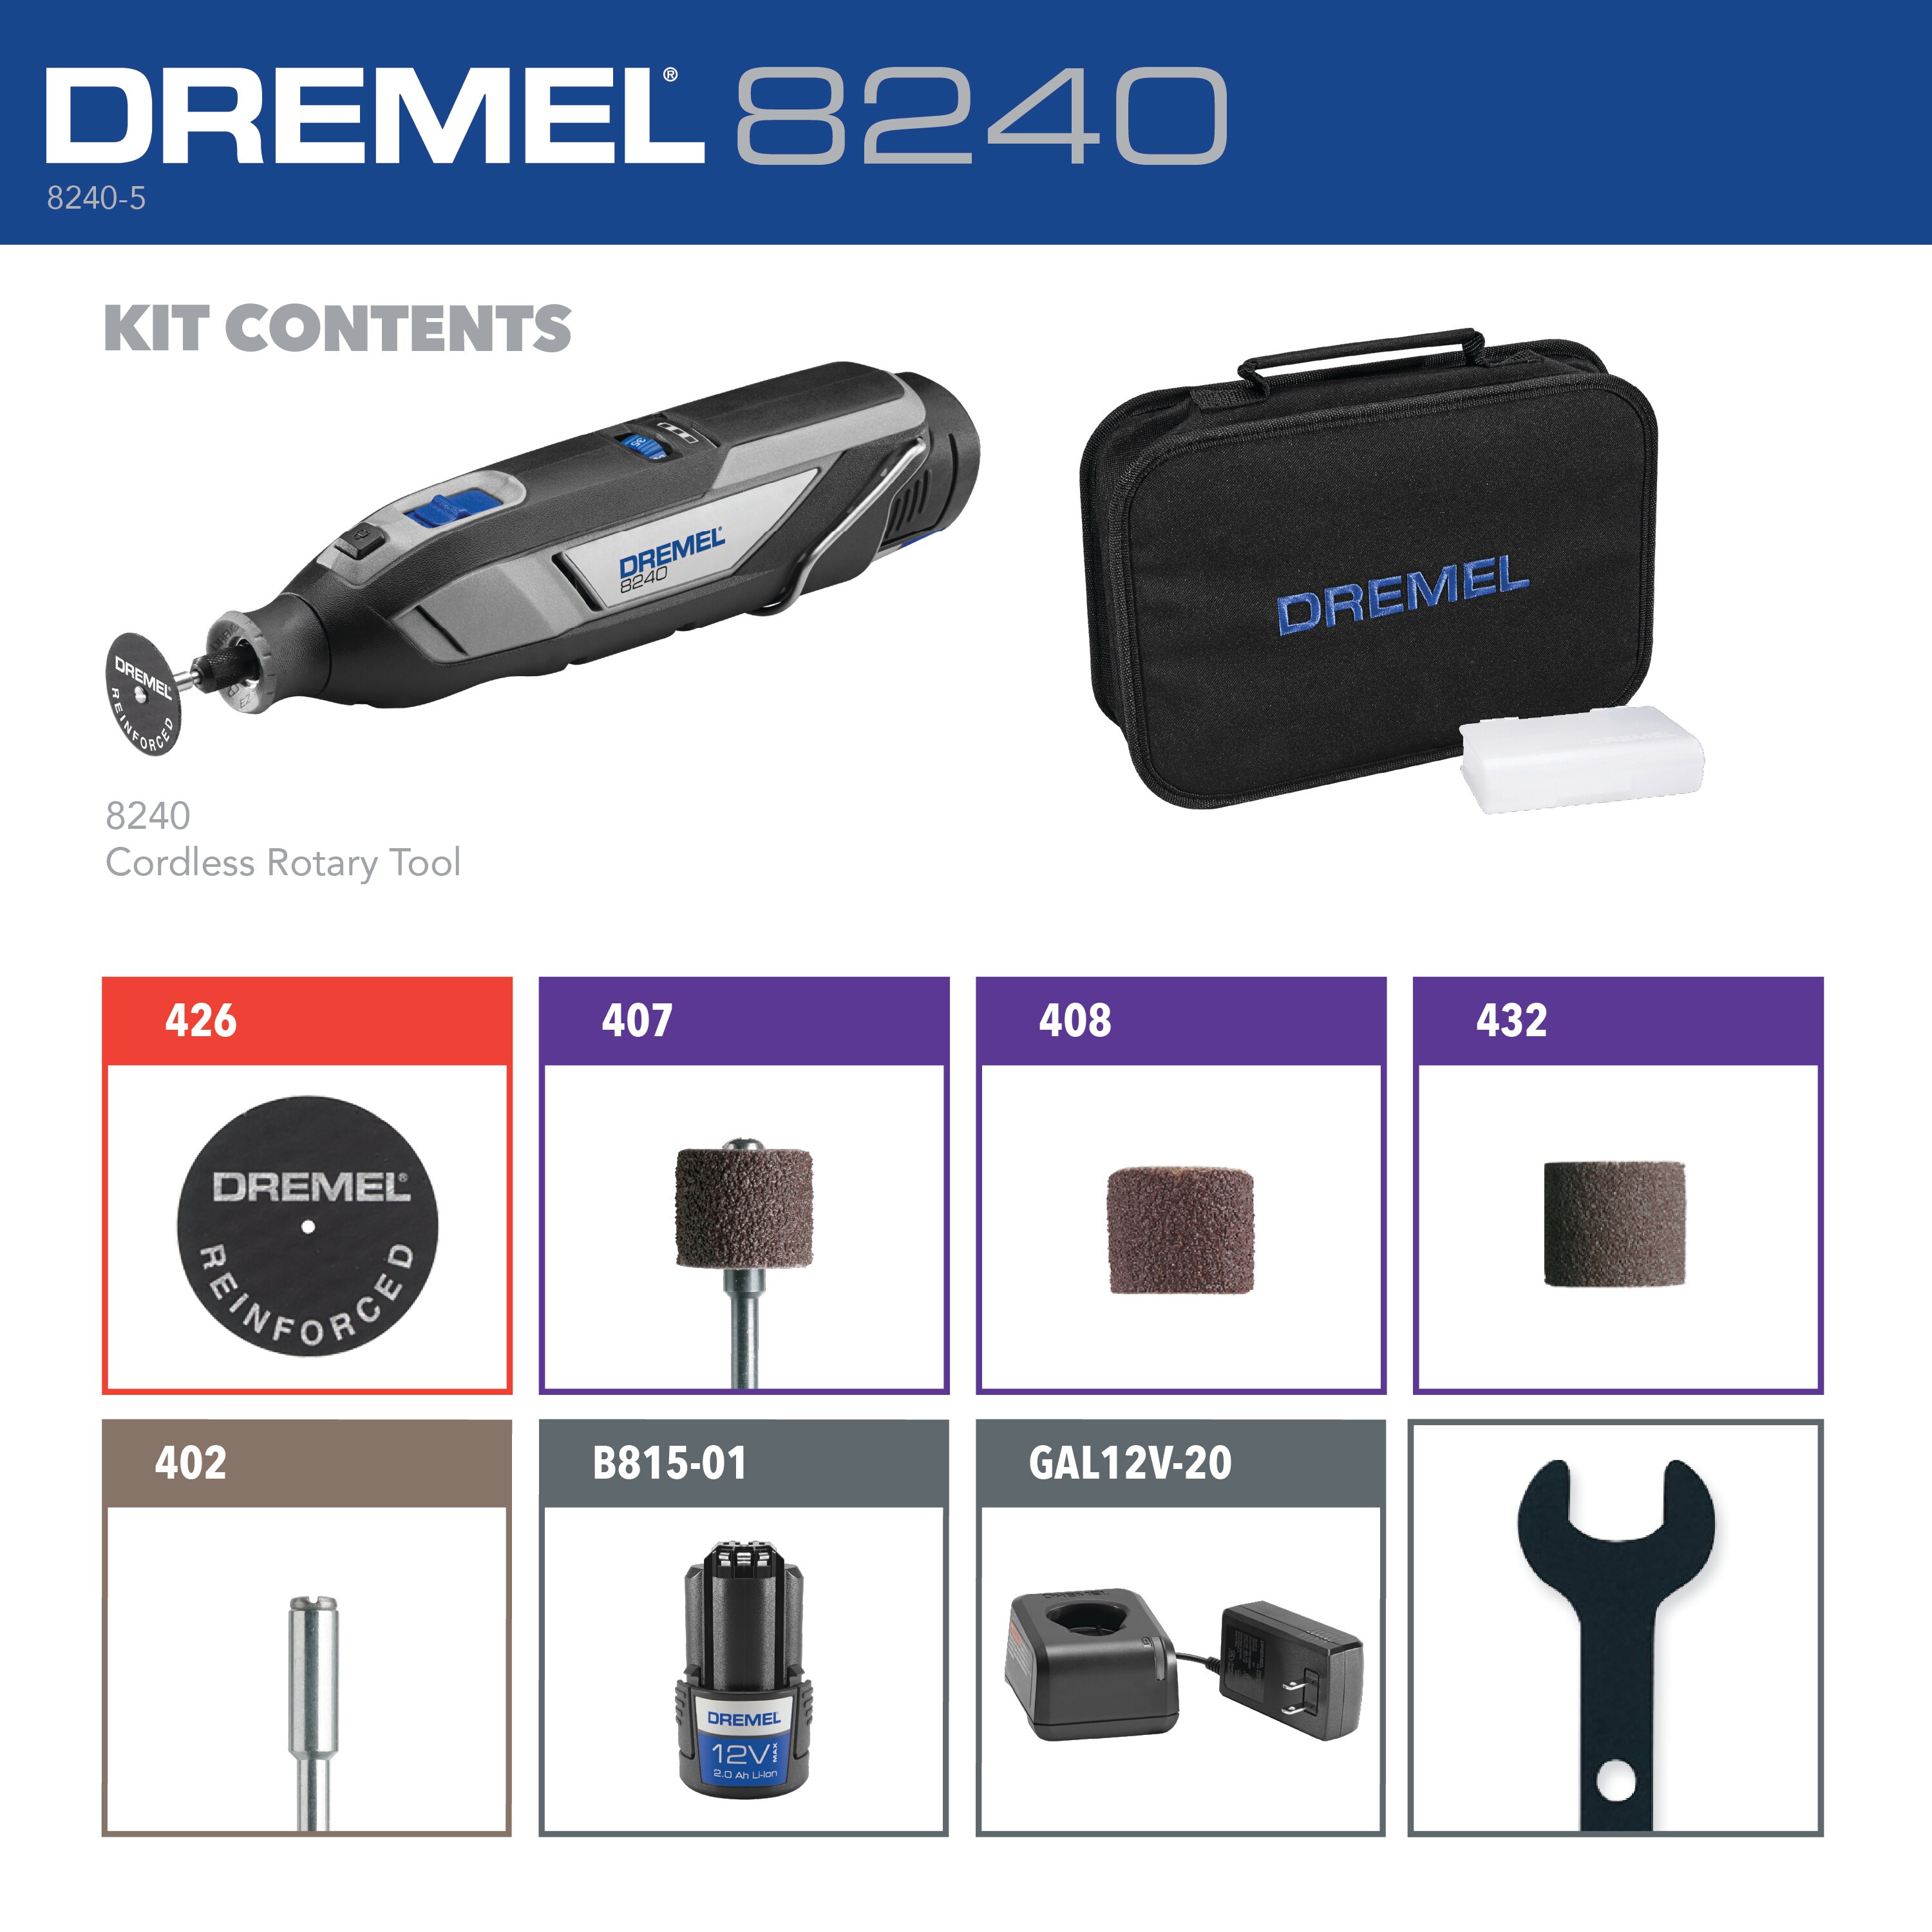 Dremel 8240 Variable Speed Cordless 12-volt 2-Amp Multipurpose